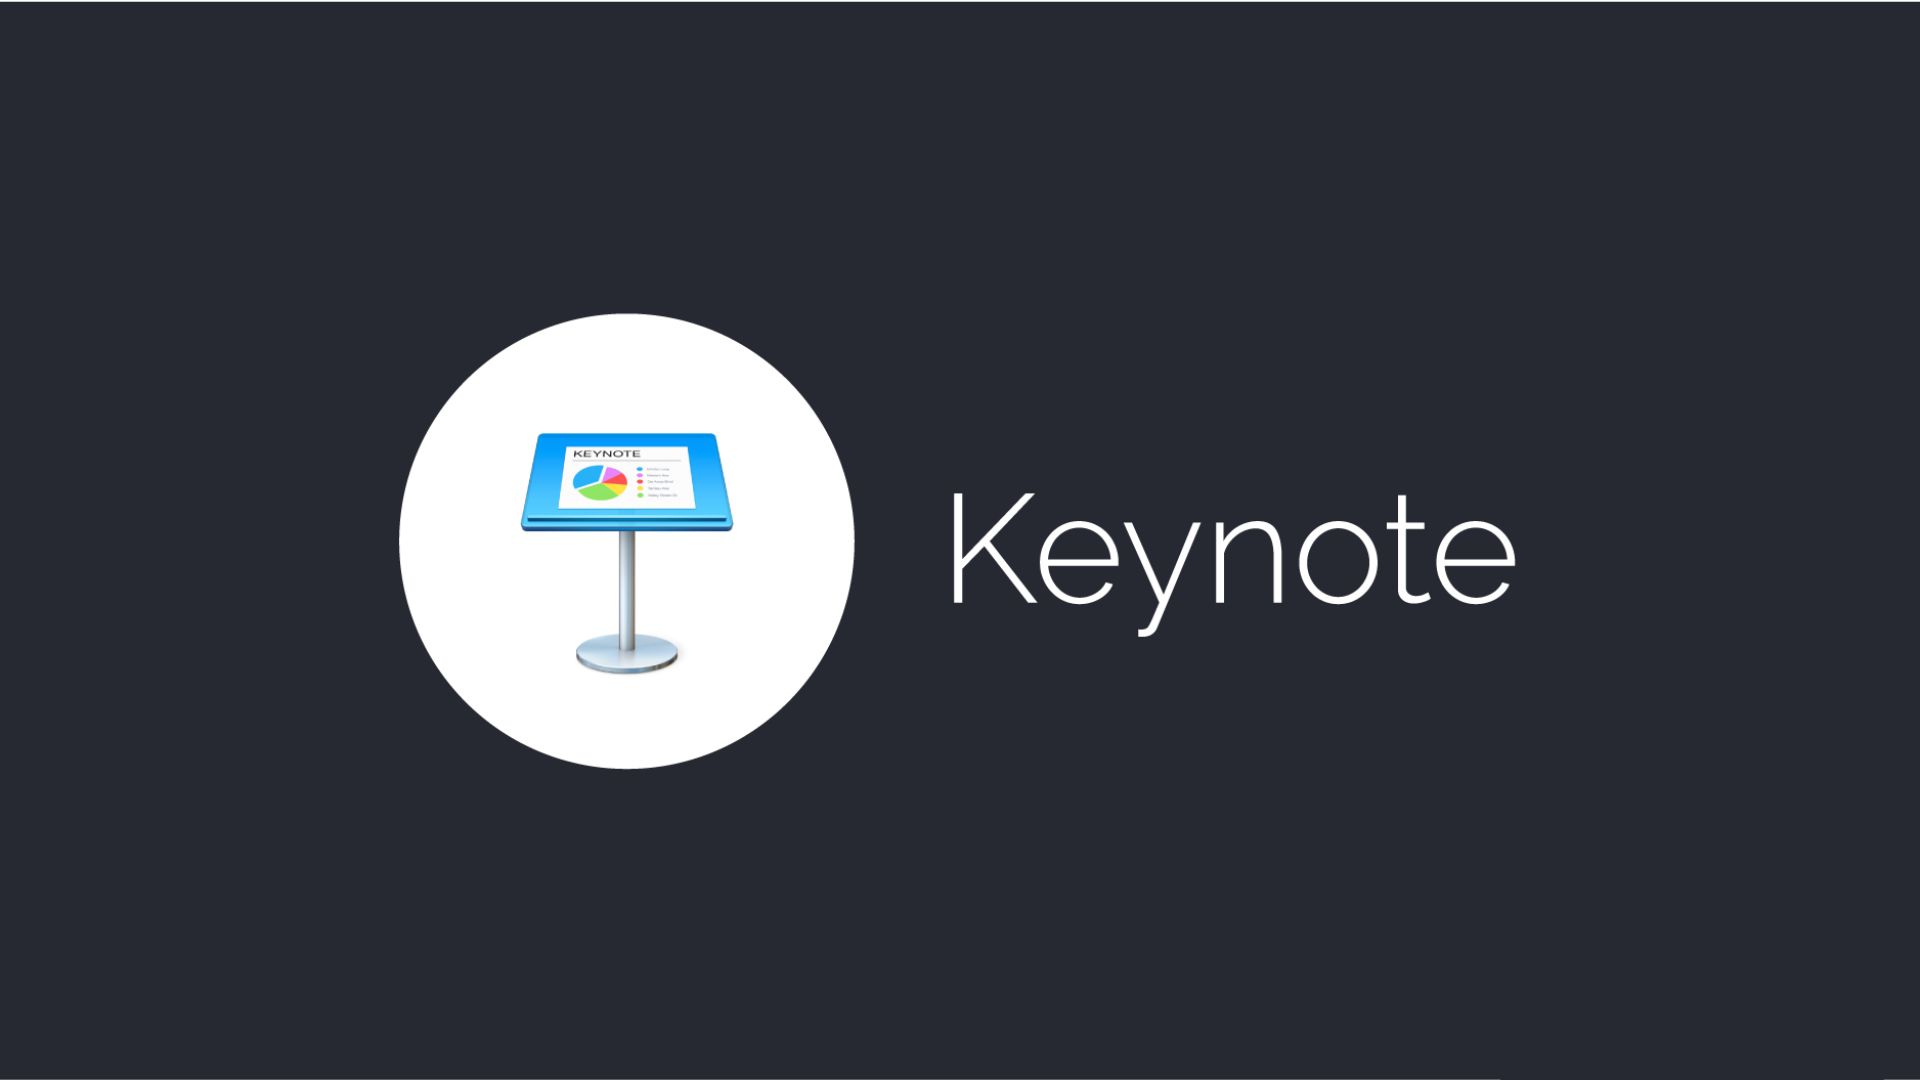 Apple's Keynote Presentation Design Software